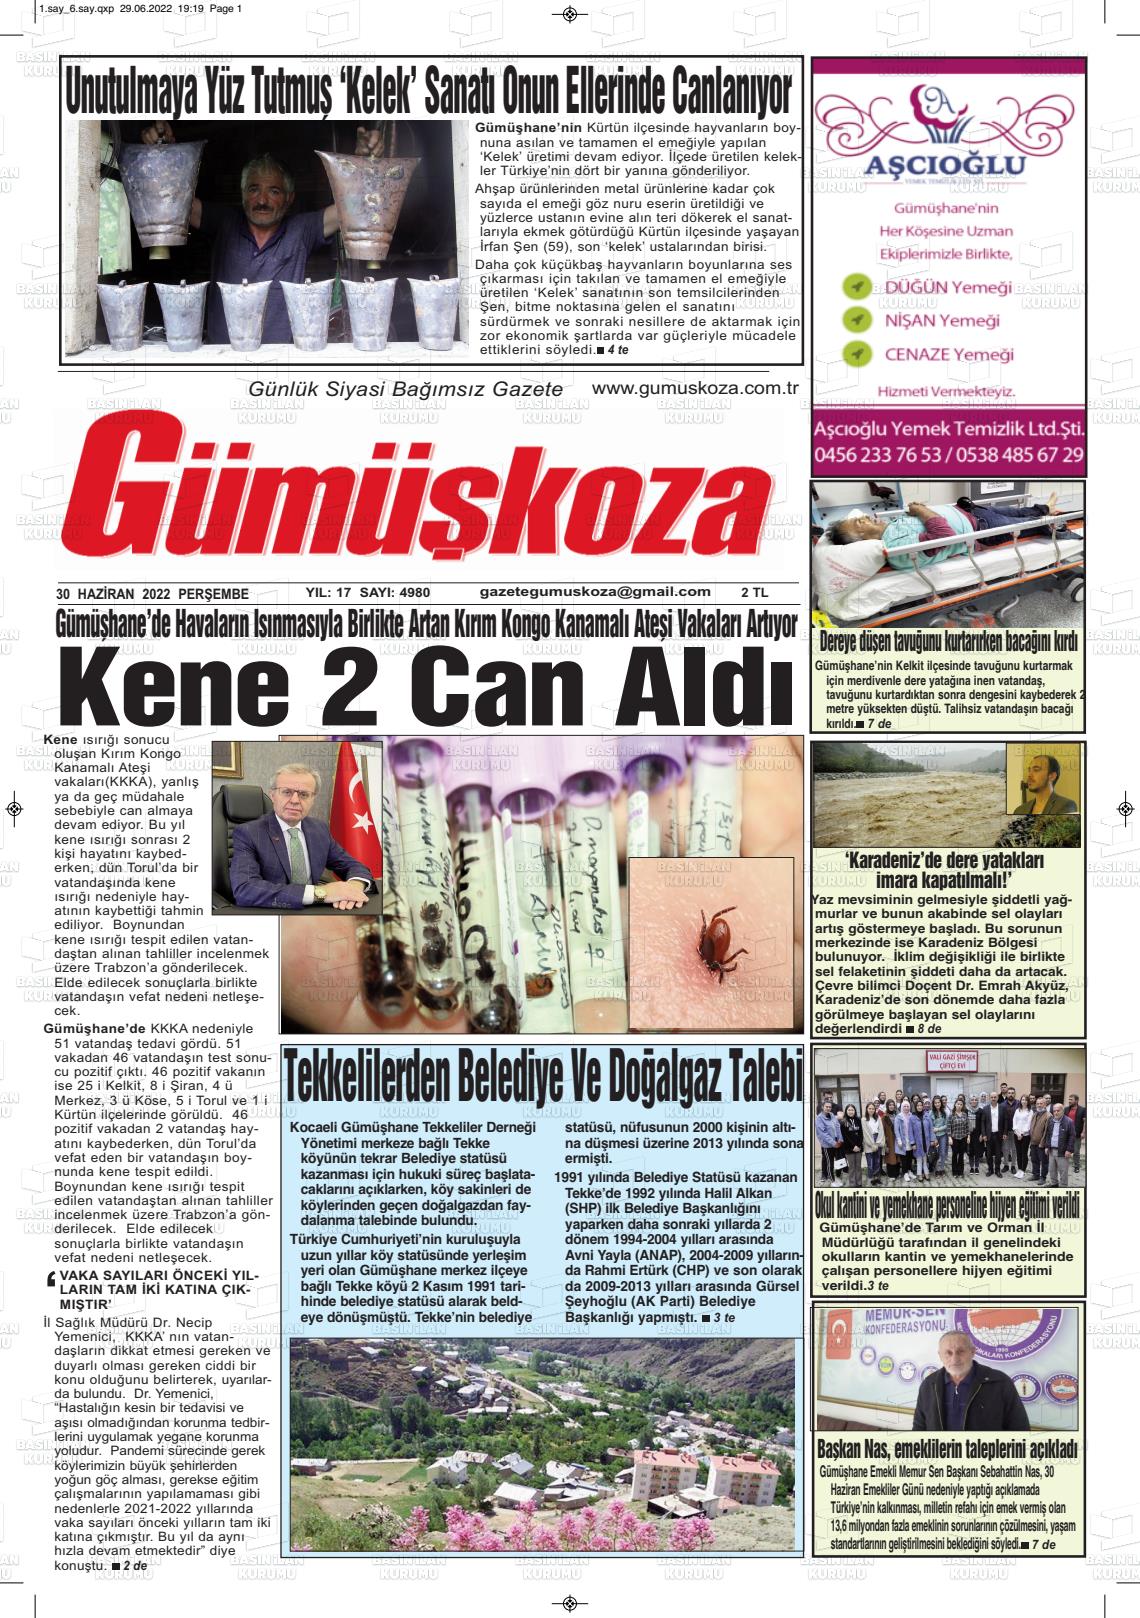 02 Temmuz 2022 Gümüşkoza Gazete Manşeti